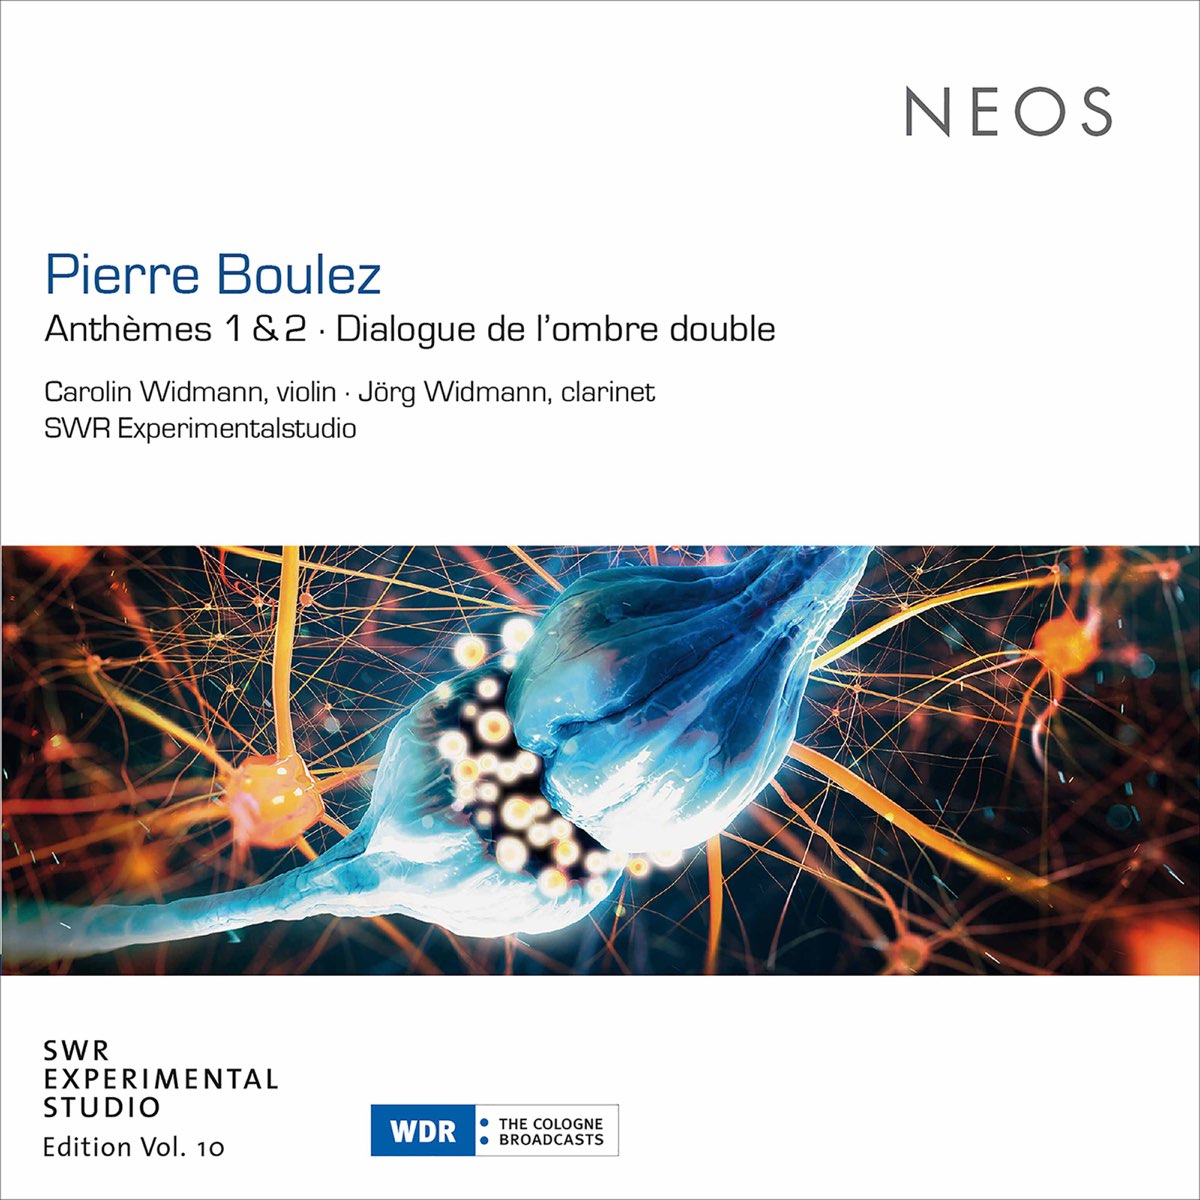 Pierre Boulez: Anthèmes & Dialogue de l'ombre double by Carolin Widmann &  Jörg Widmann on Apple Music